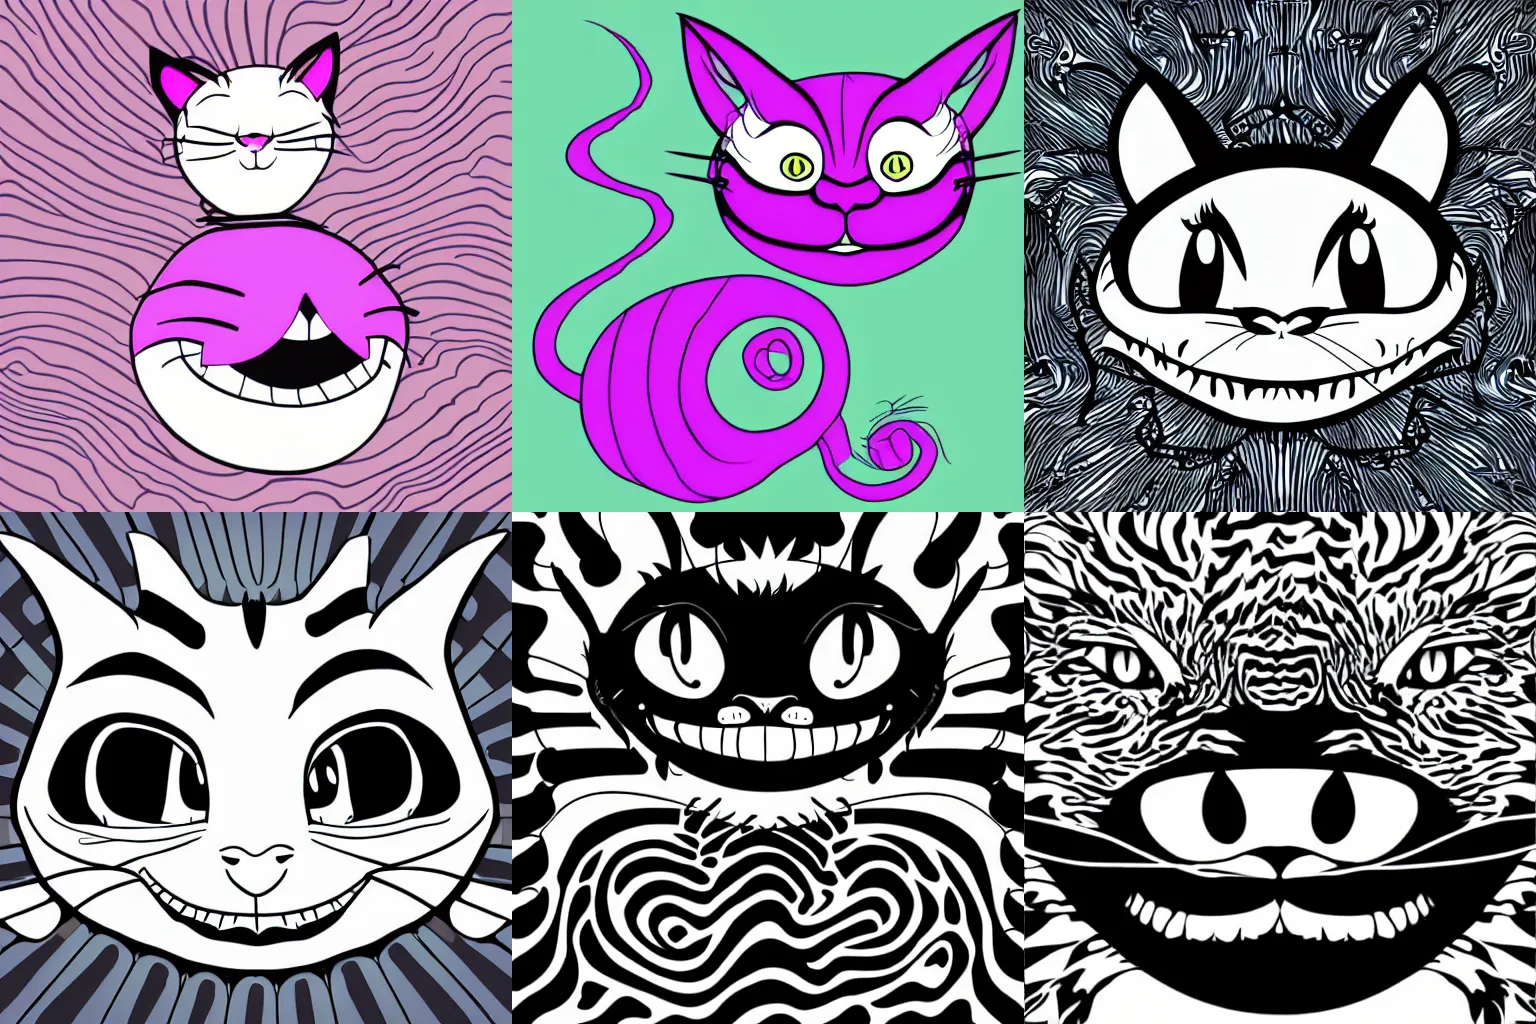 Prompt: Cheshire cat, vector art-i